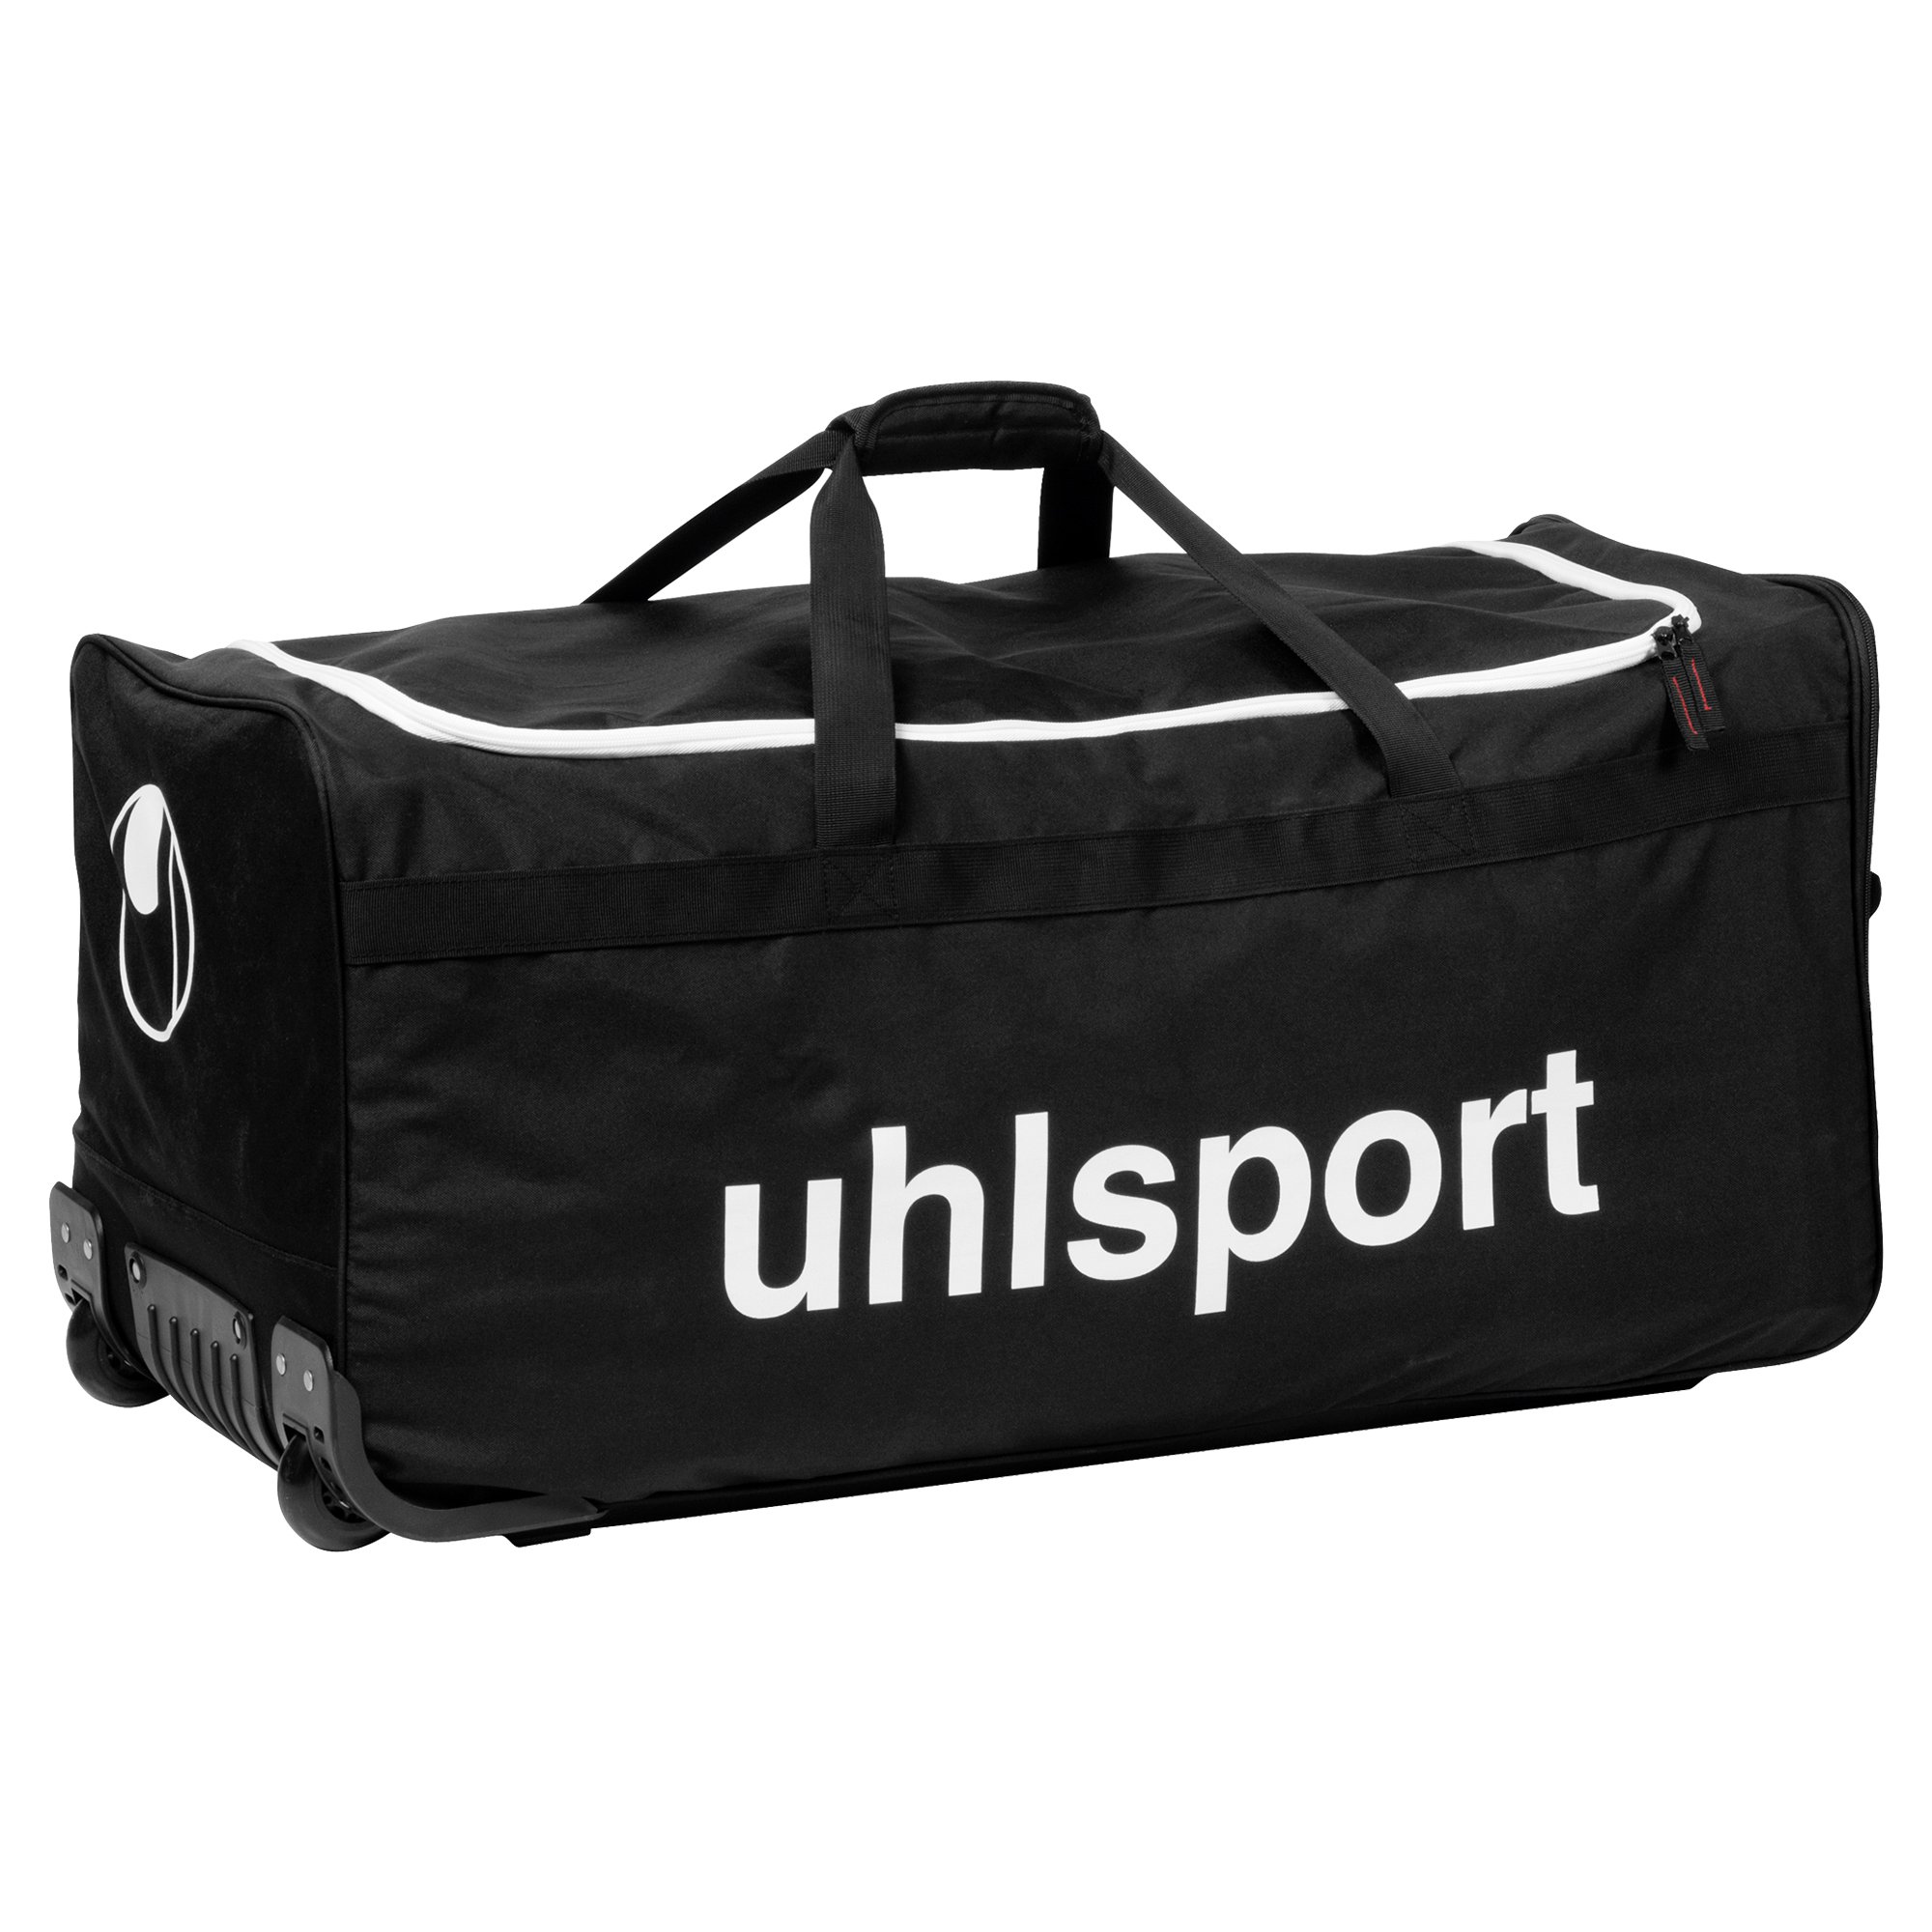 Uhlsport Basic Line 110 L Travel & Team Kitbag